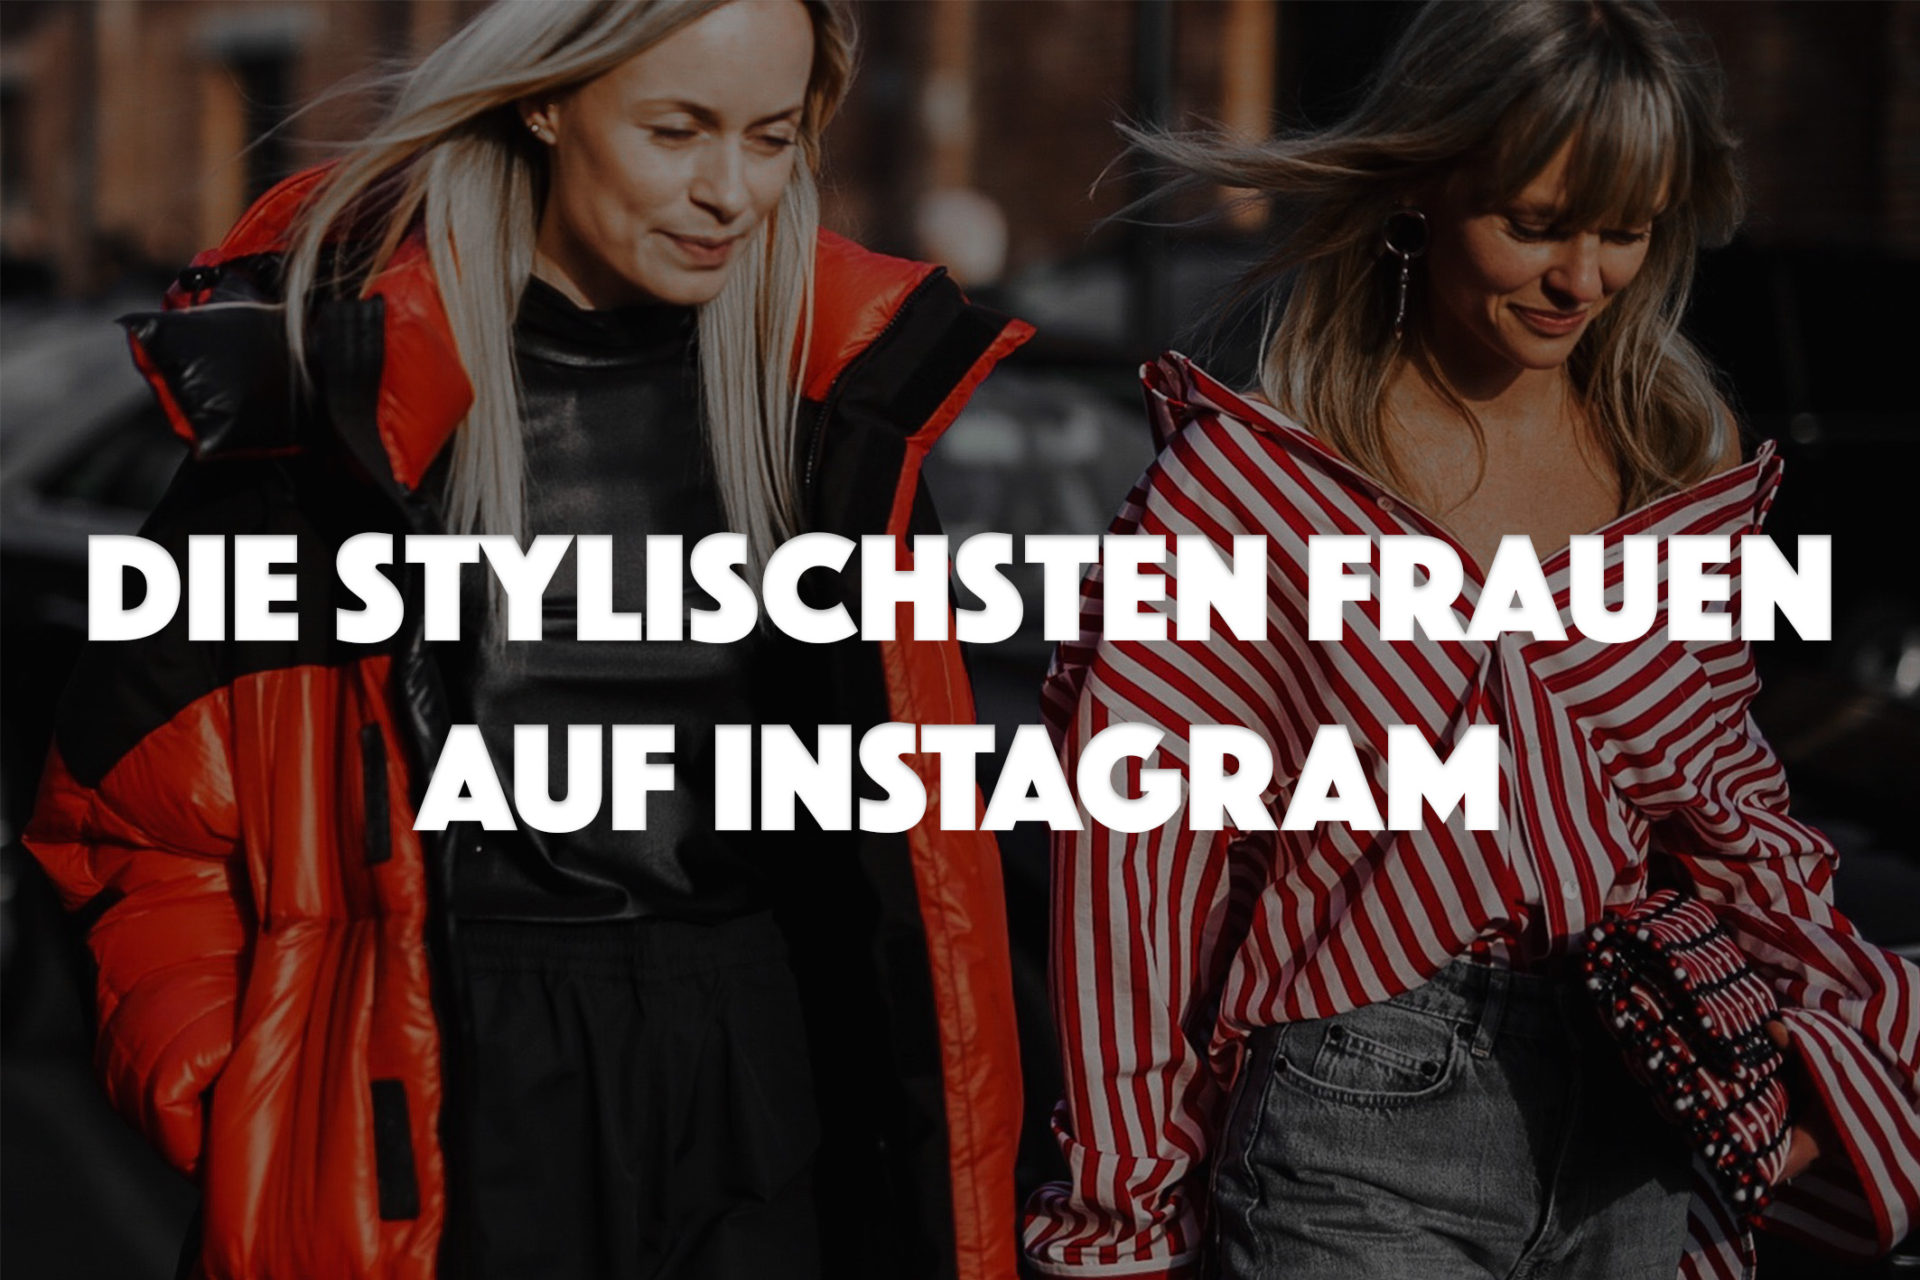 Stylischsten Frauen auf Instagram